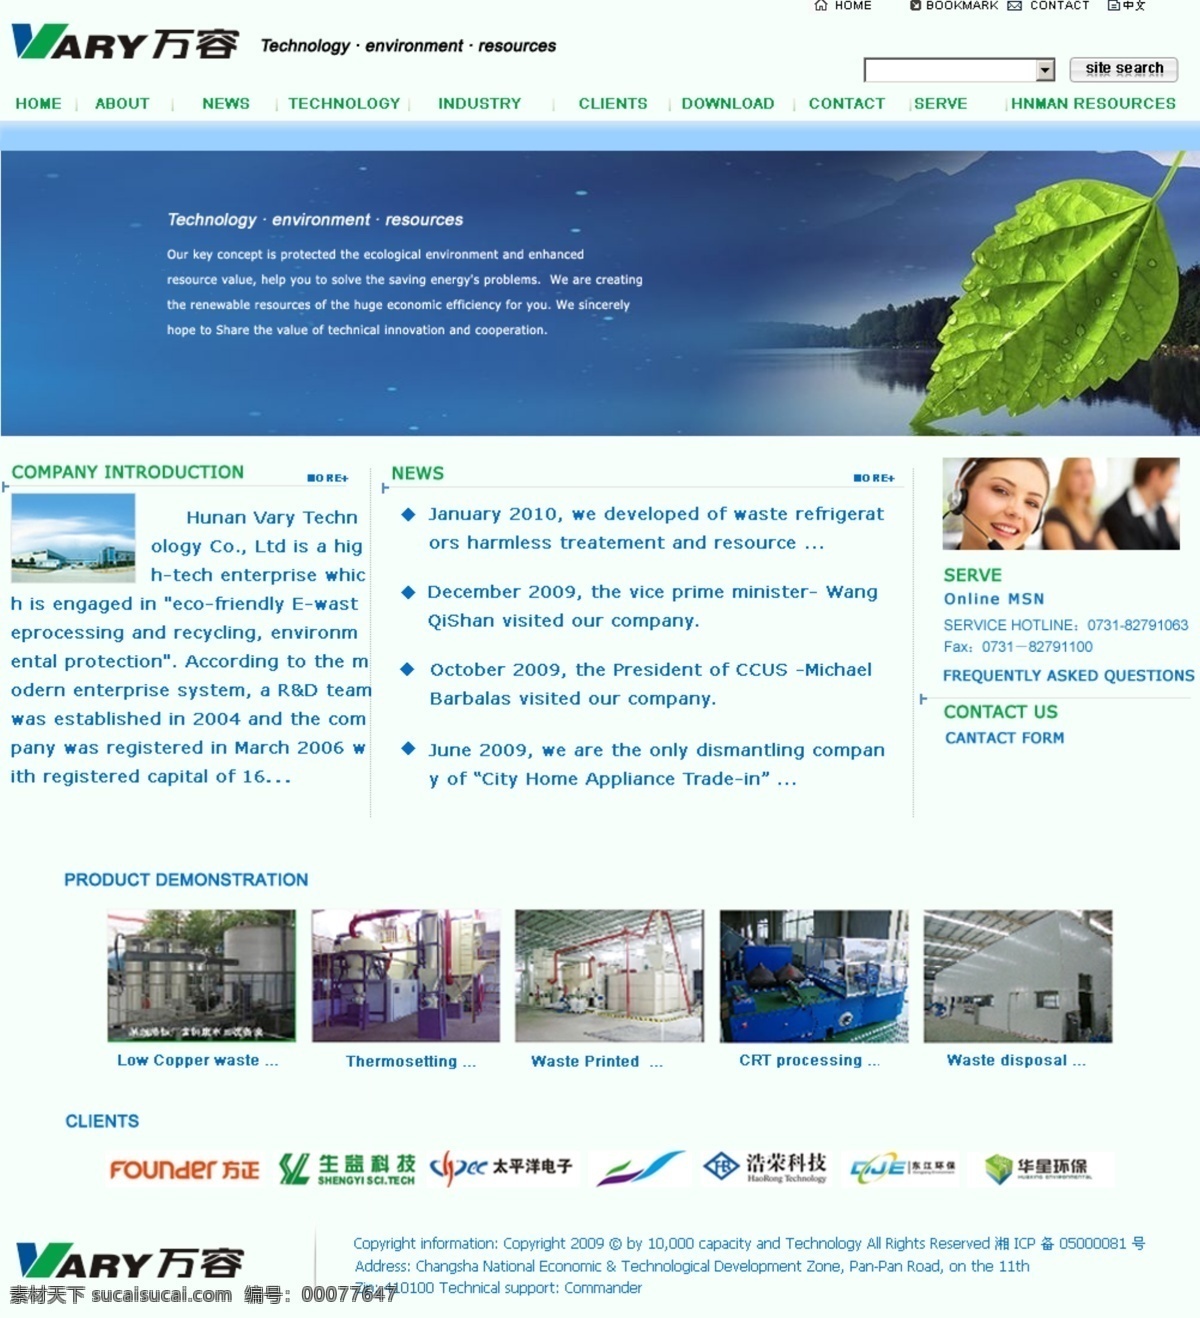 环境保护 绿化 网页模板 源文件 中文模版 模板下载 环境科技 英文 大气 网站 模板 万容 家居装饰素材 园林景观设计